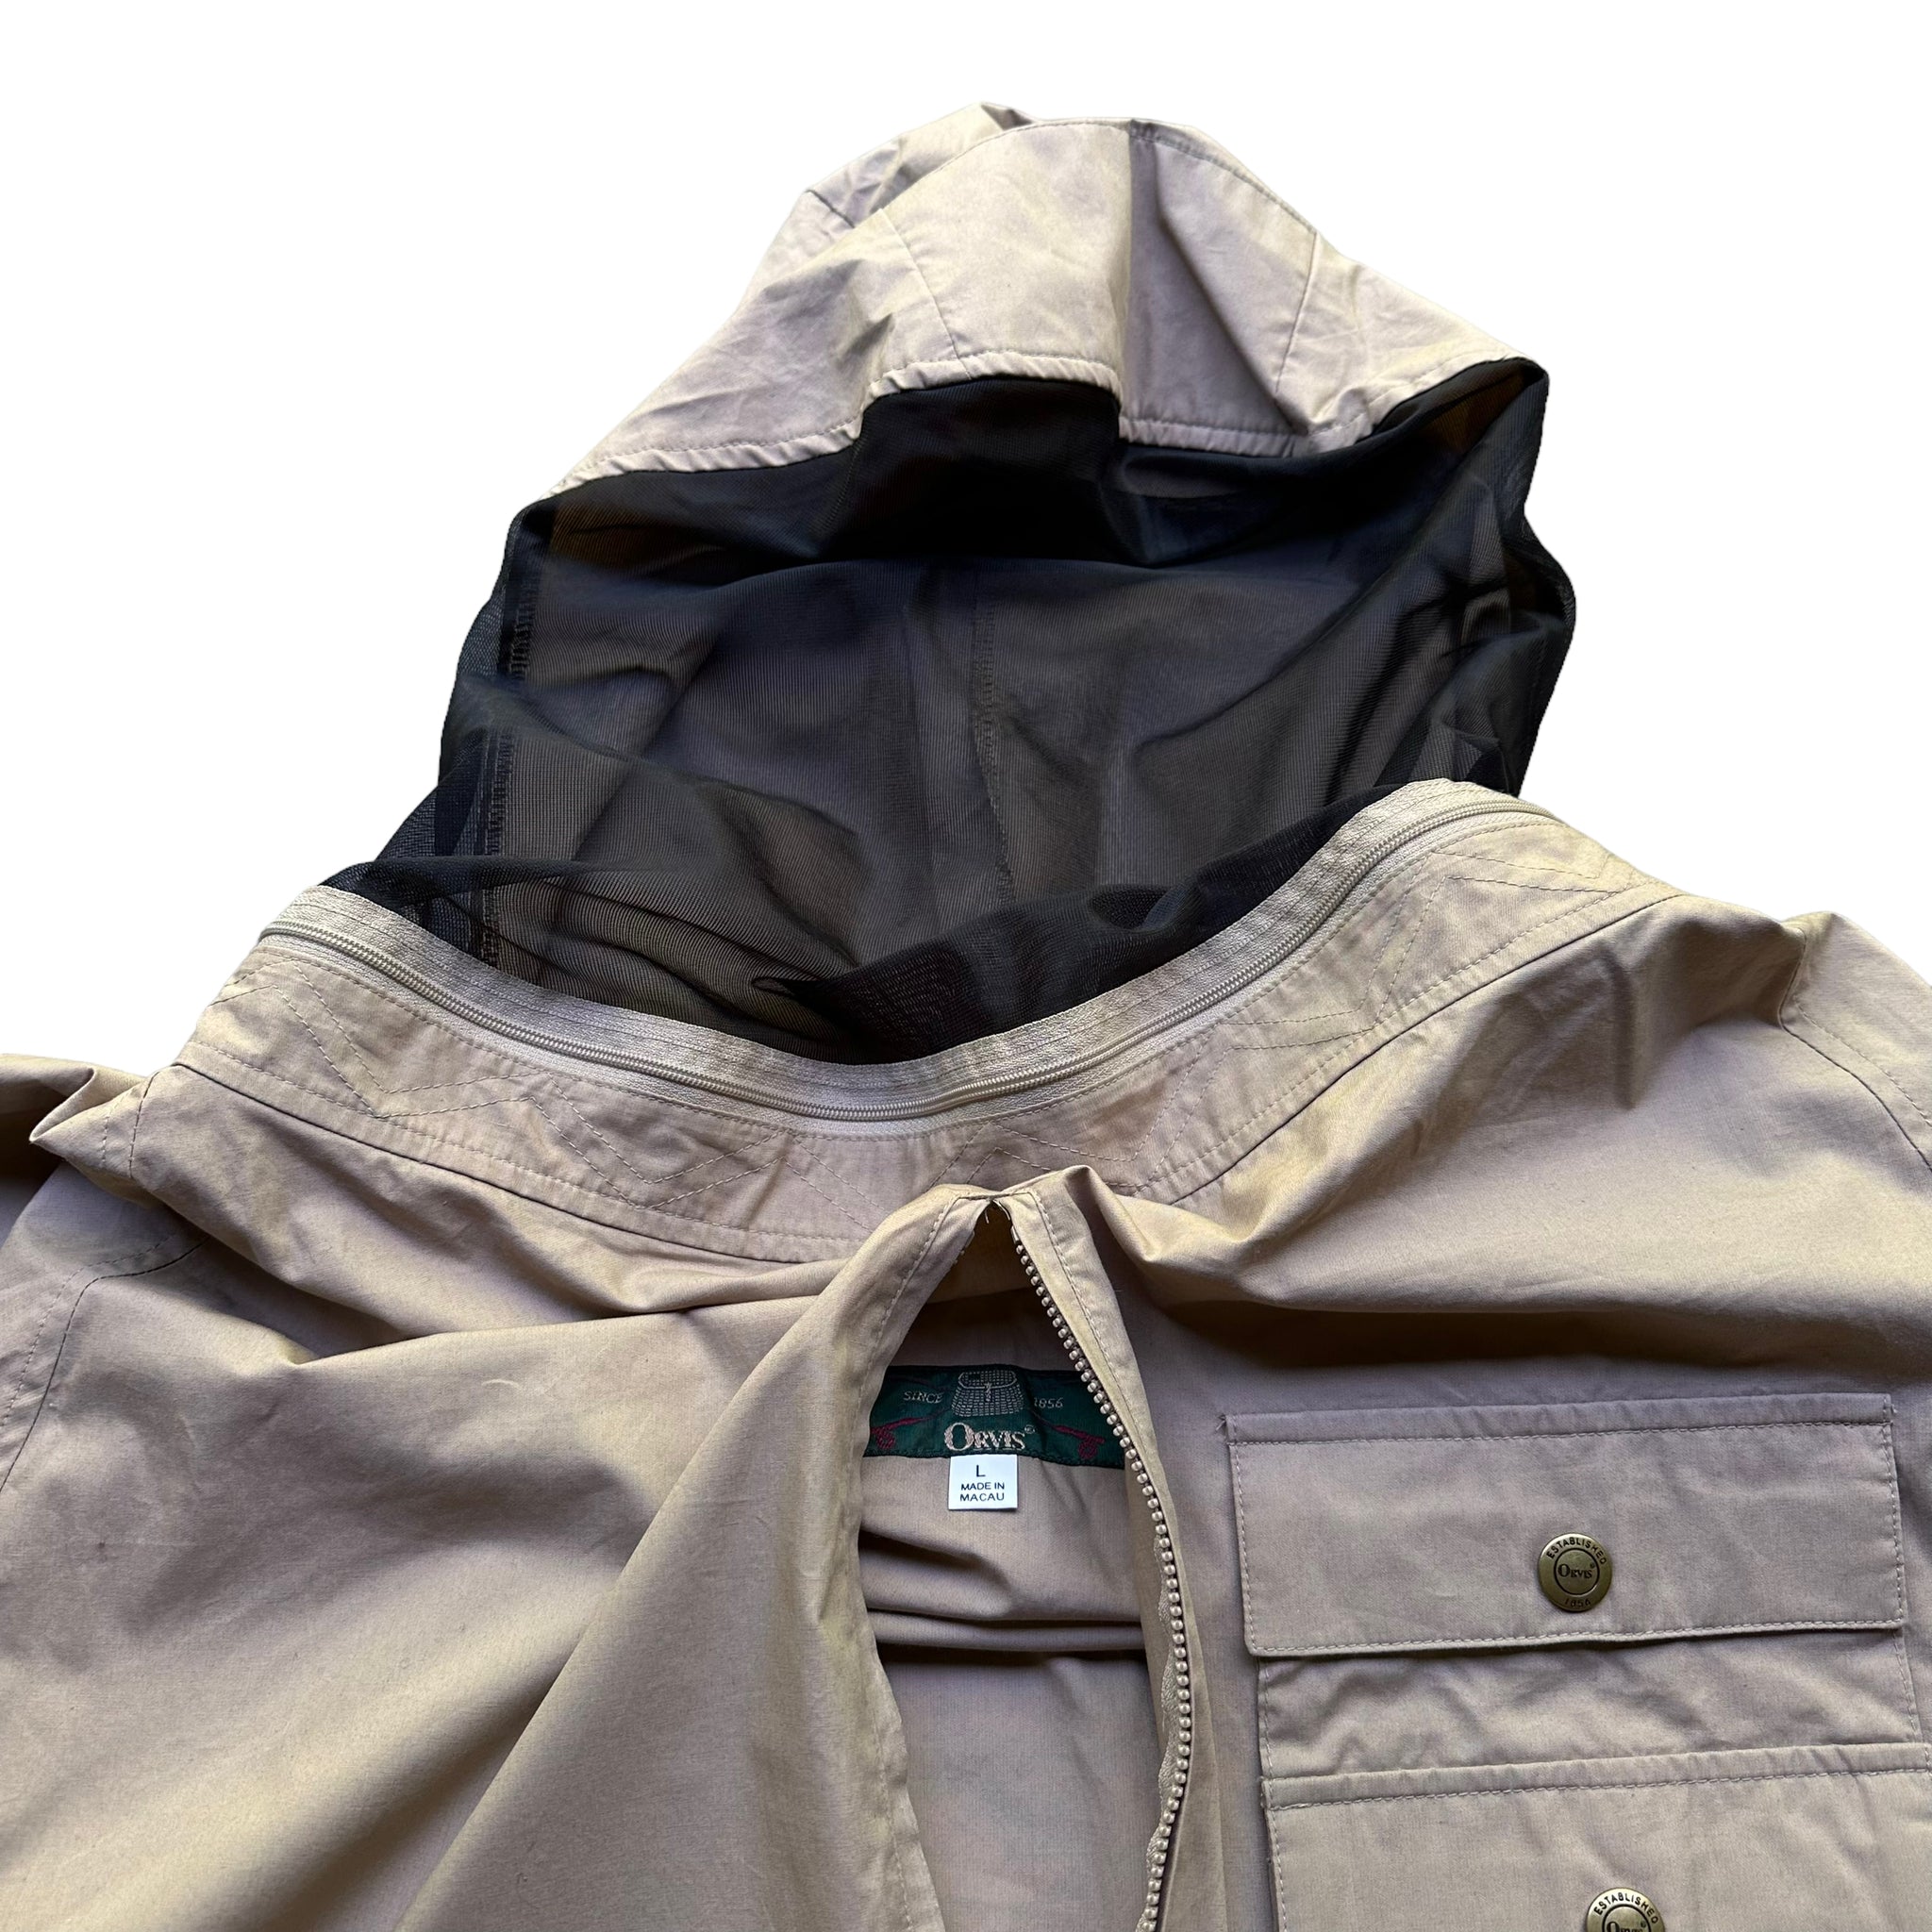 Orvis bug jacket large